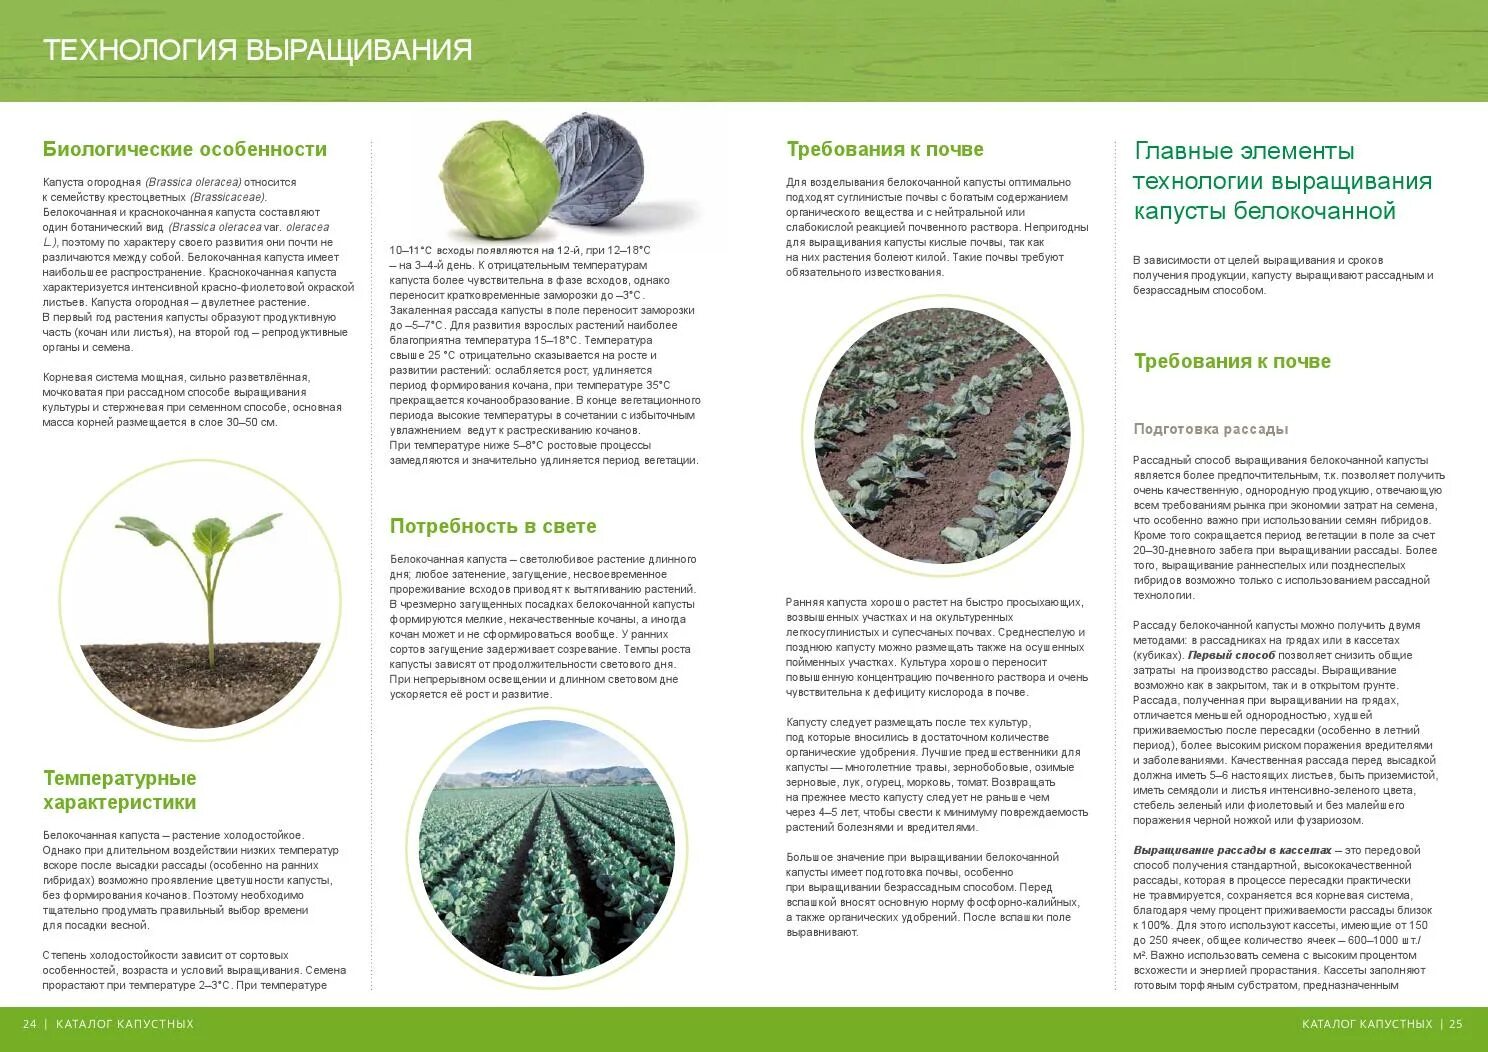 При какой температуре выращивать рассаду капусты. Технология выращивания белокочанной капусты кратко. Возделывание белокочанной капусты технология возделывания. Технология возделывания капусты белокочанной кратко. Технология выращивания рассады капусты.